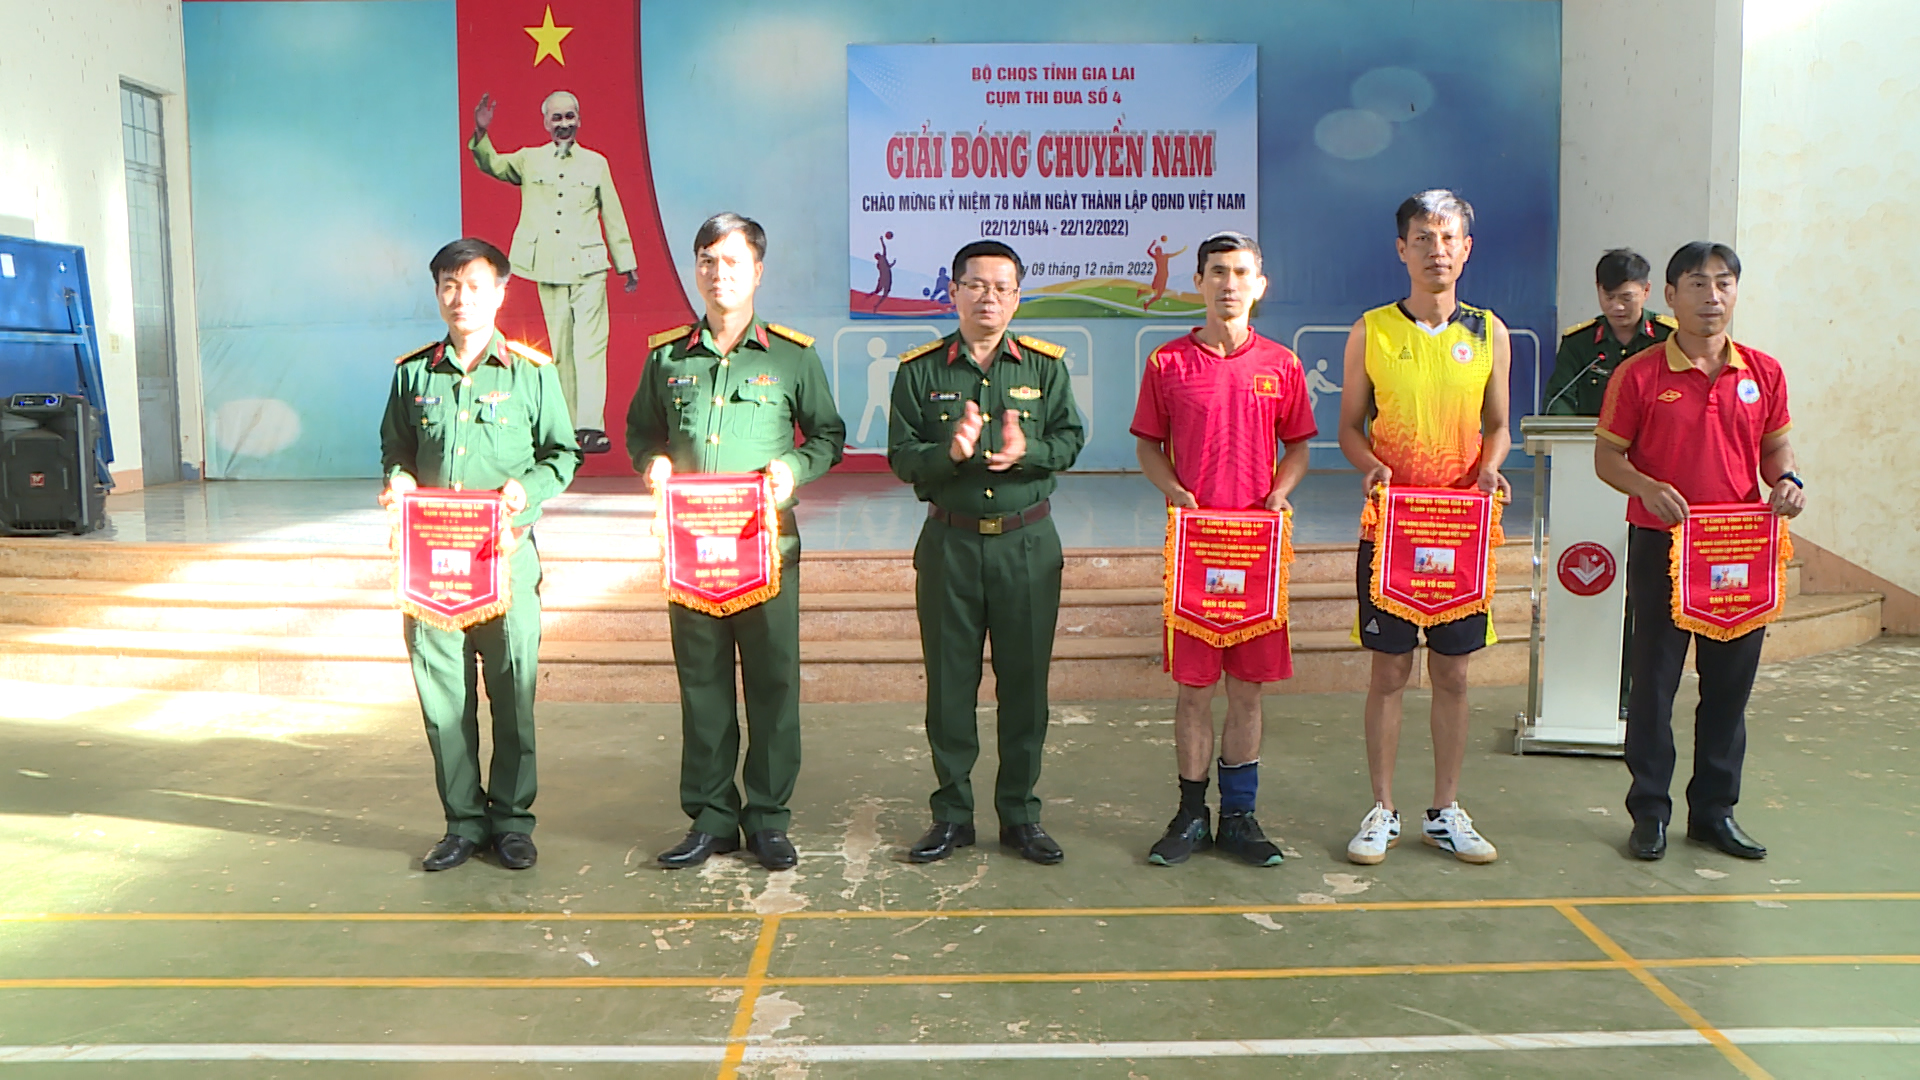 Article BCHQS huyện Ia Grai, tổ chức giải bóng chuyền chào mừng 78 năm ngày thành lập Quân đội nhân dân Việt Nam (22/12/1944-22/12/2022).